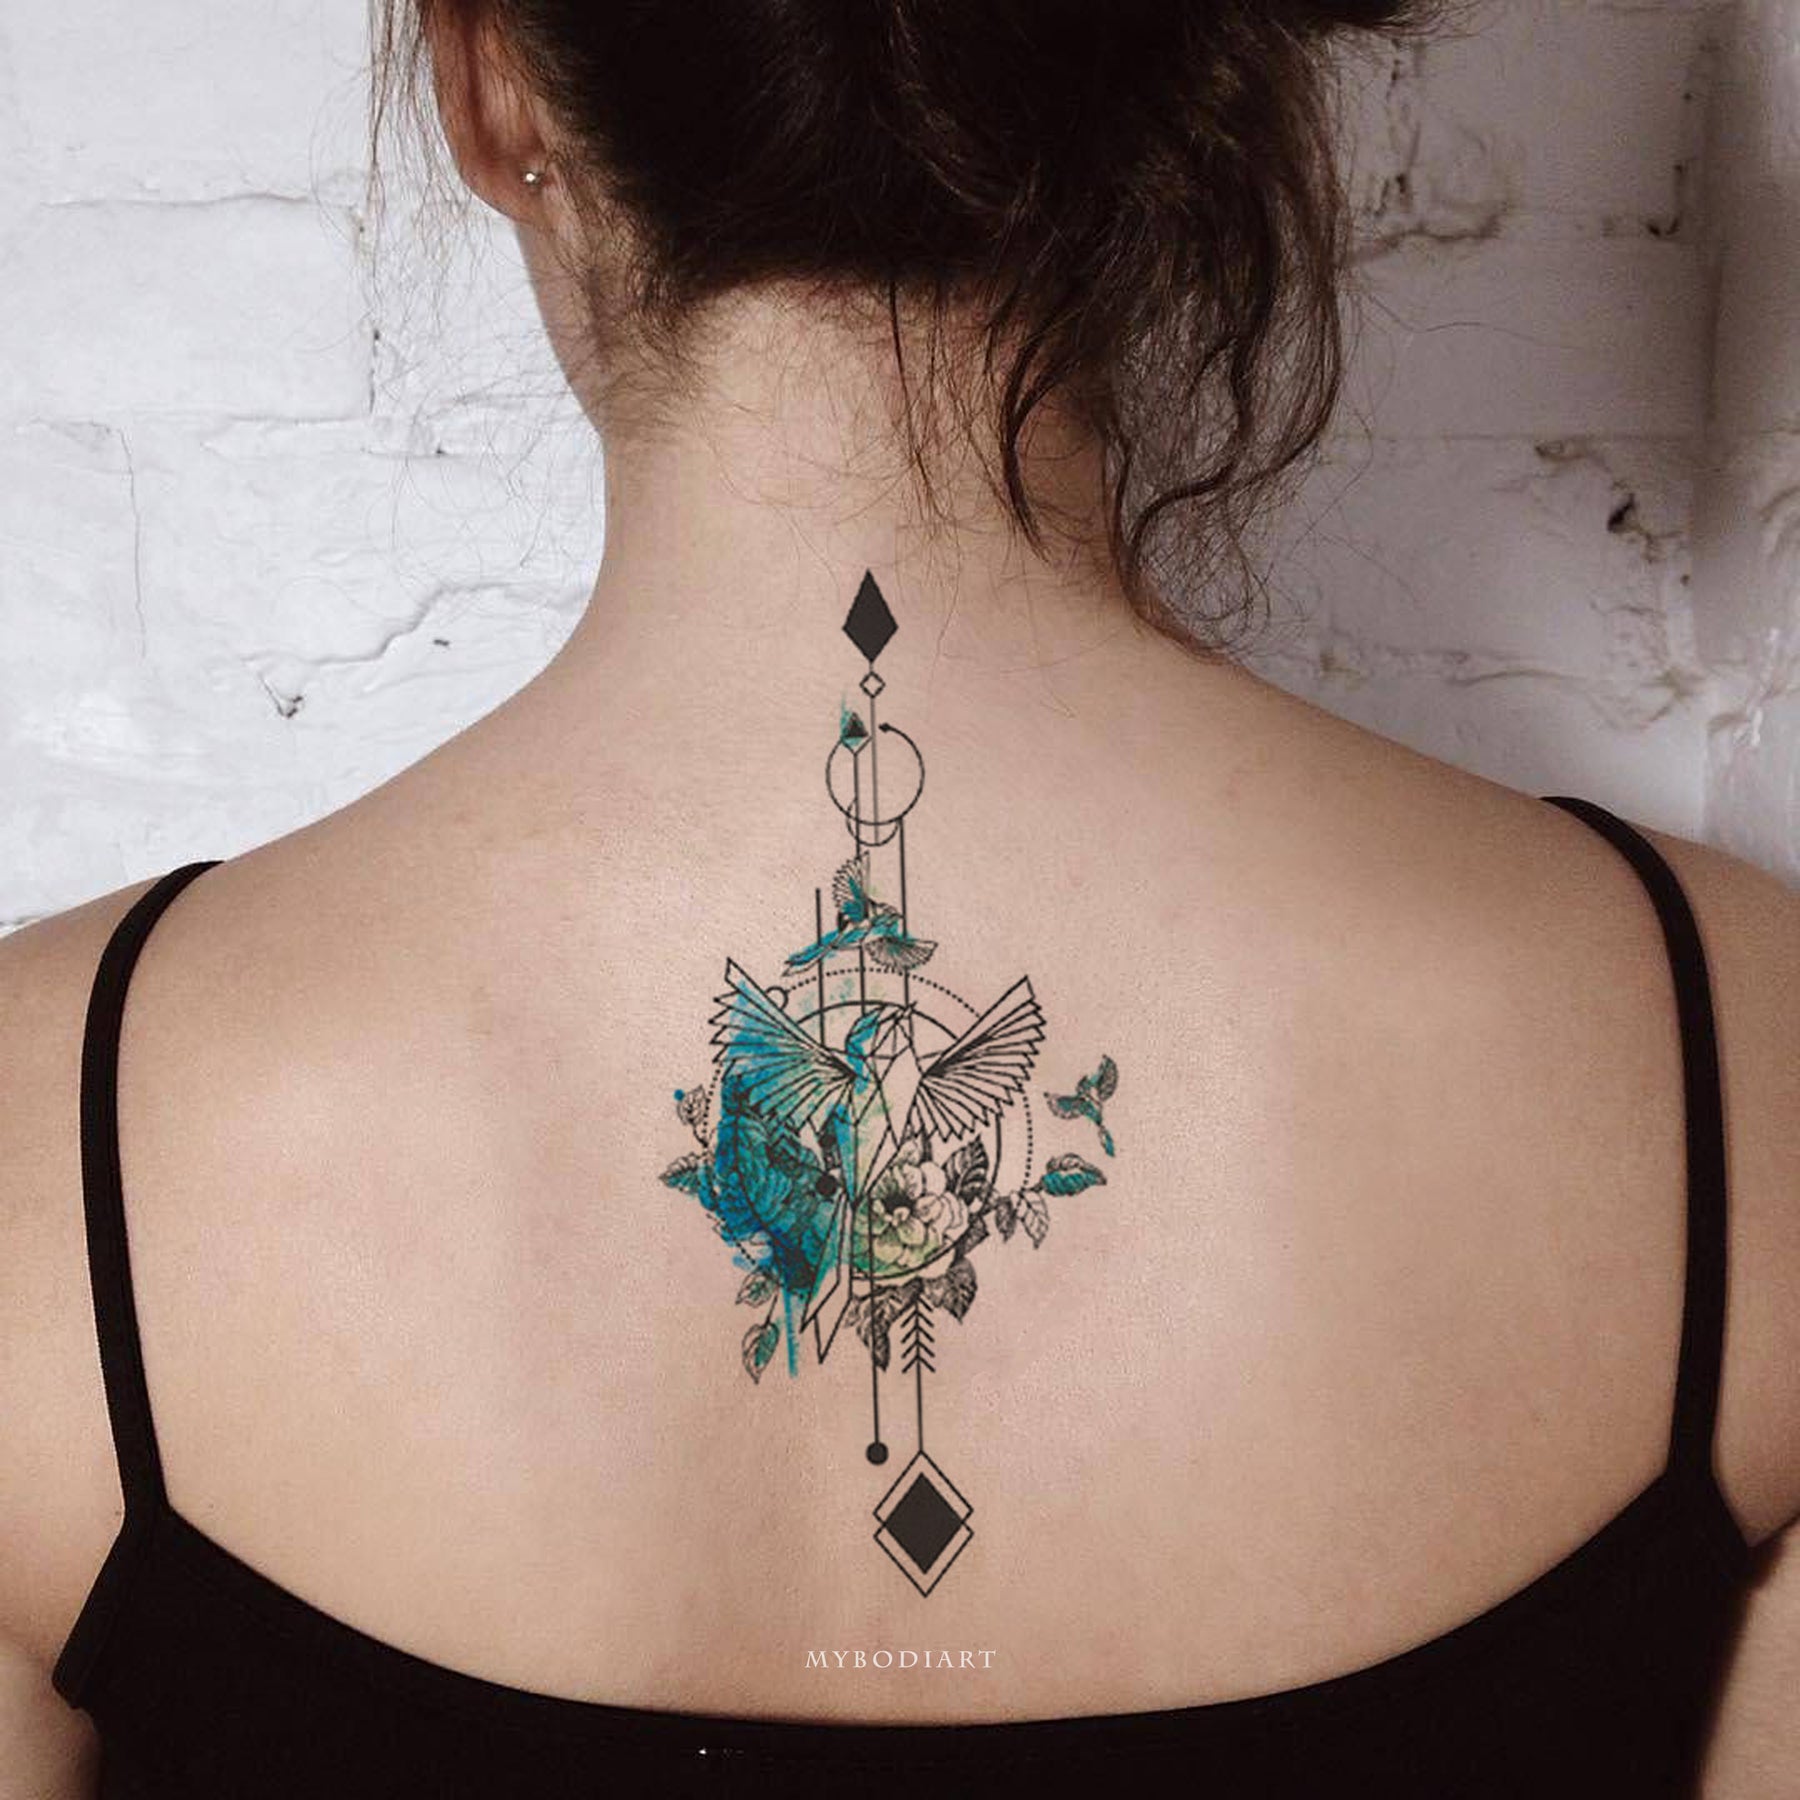 75 Impressive Arrow Tattoos On Back  Tattoo Designs  TattoosBagcom